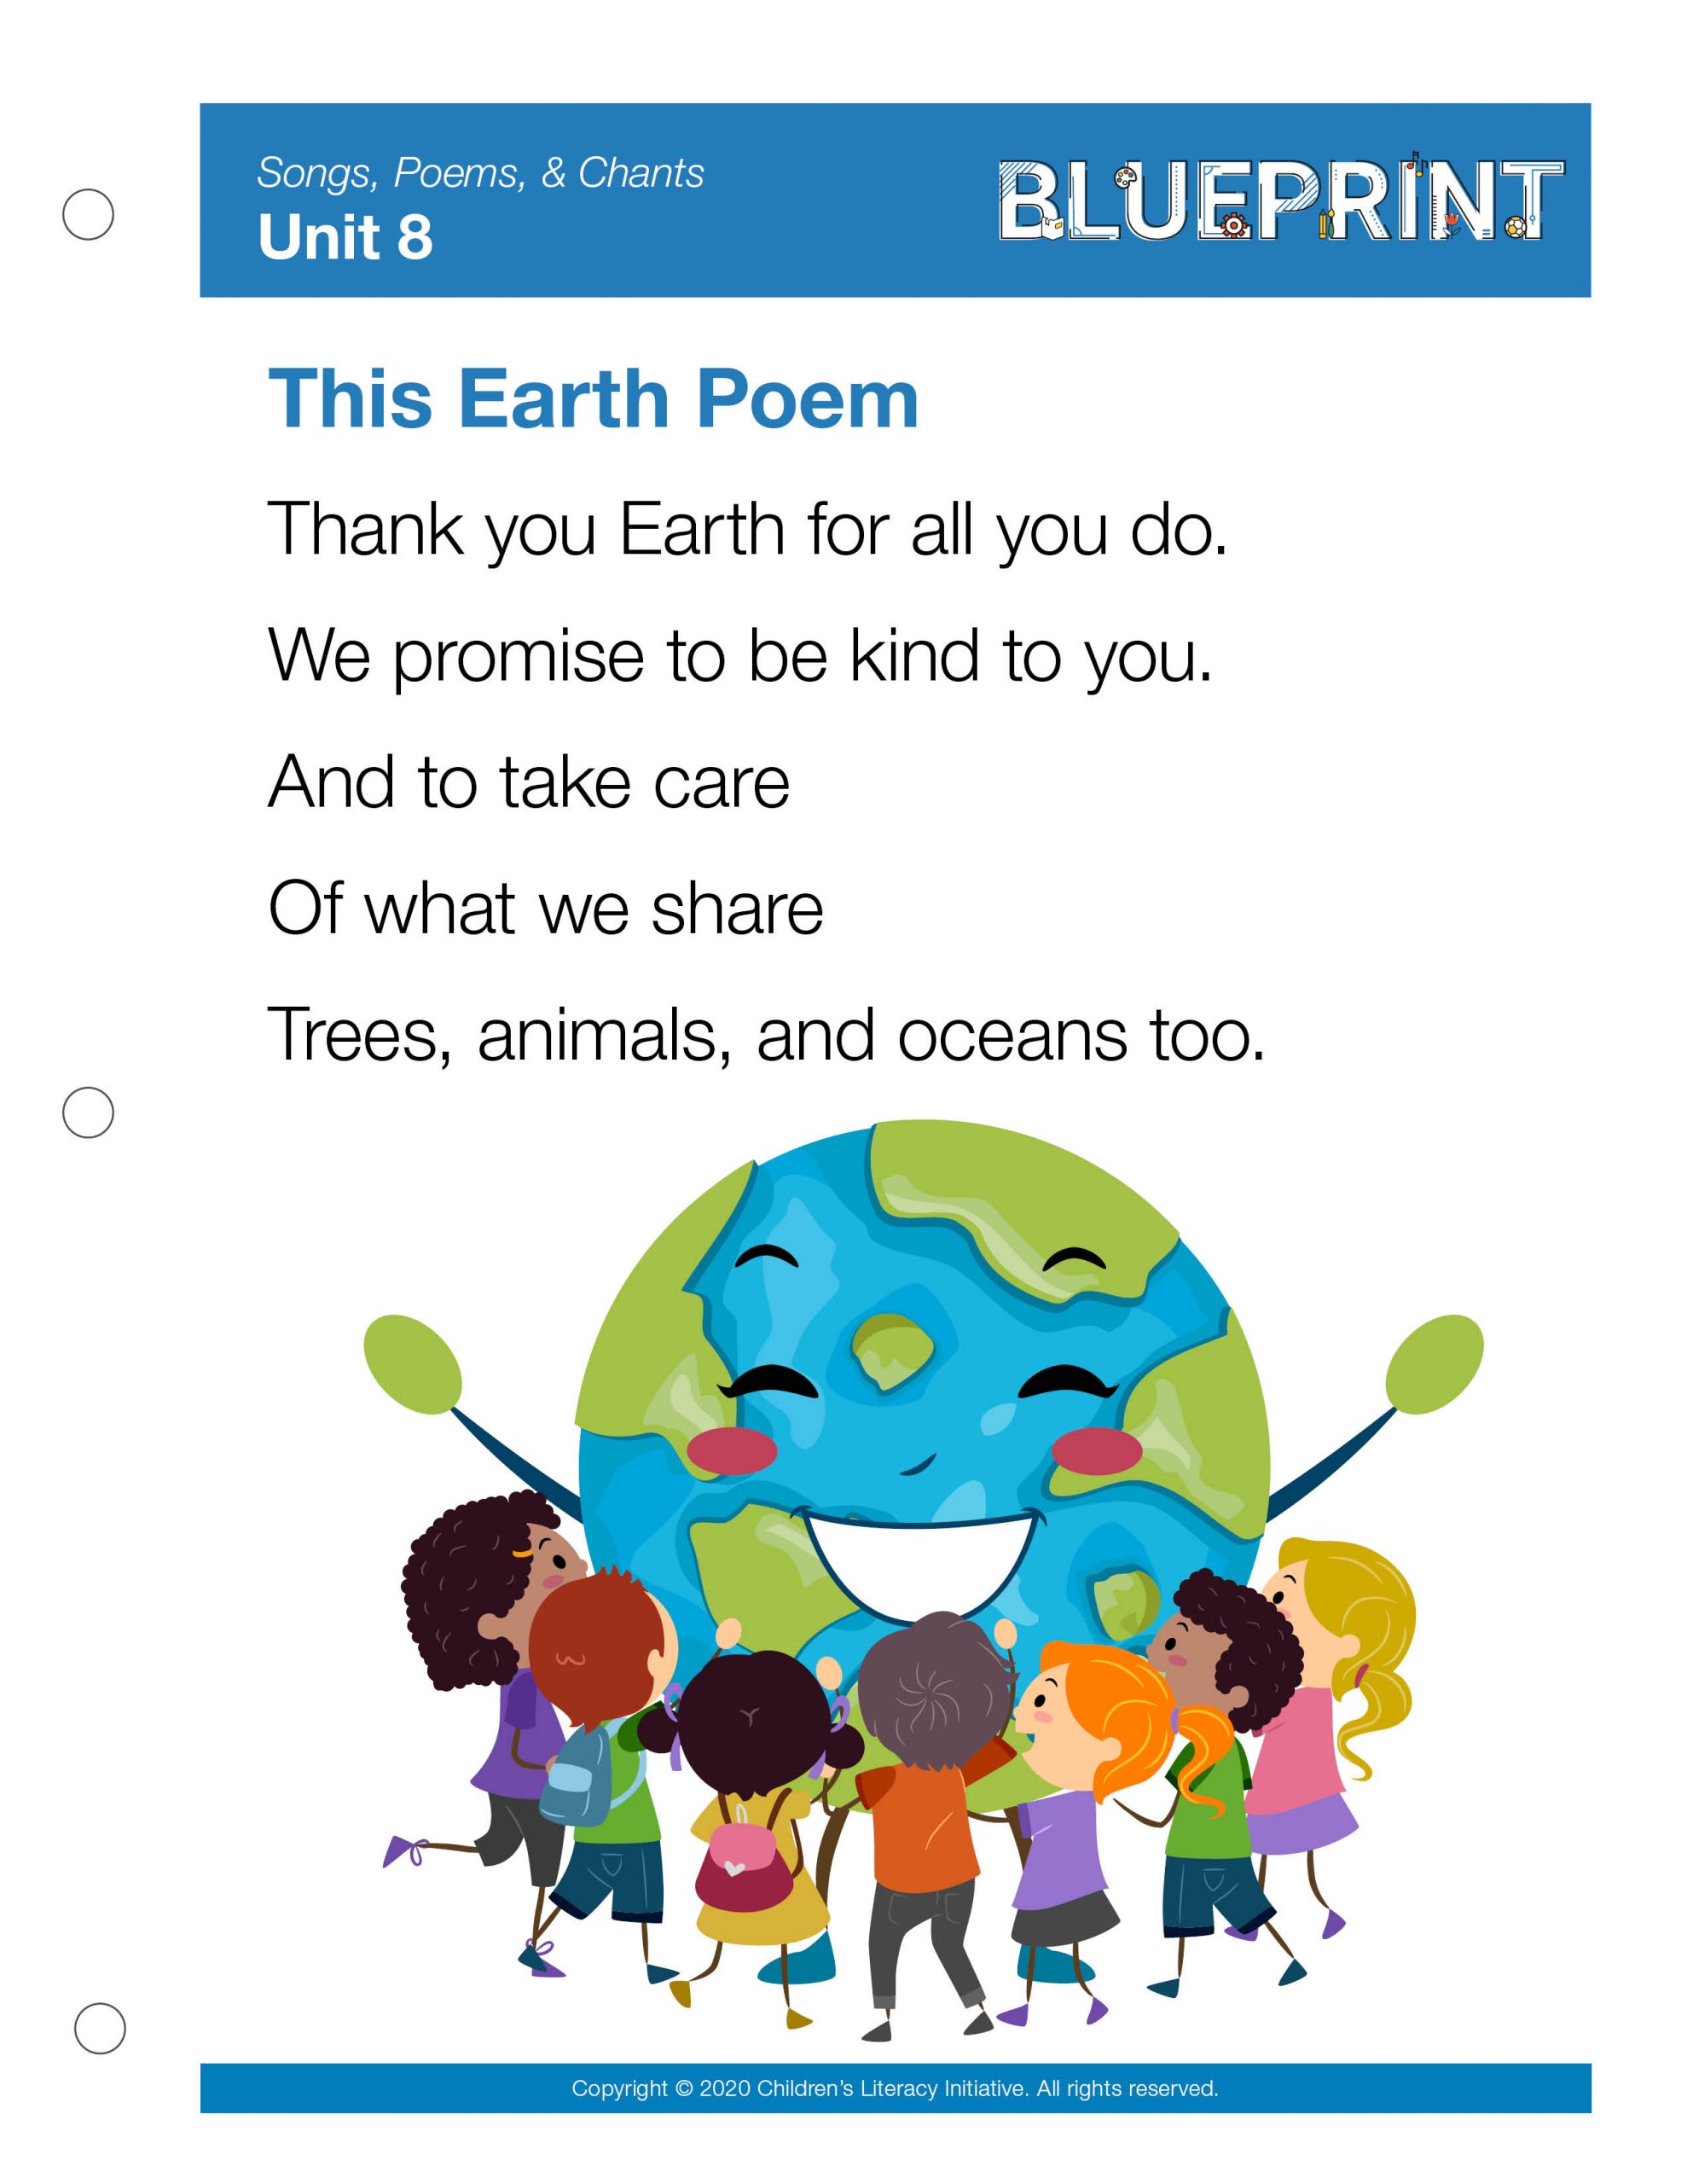 The Earth Poem Week 4